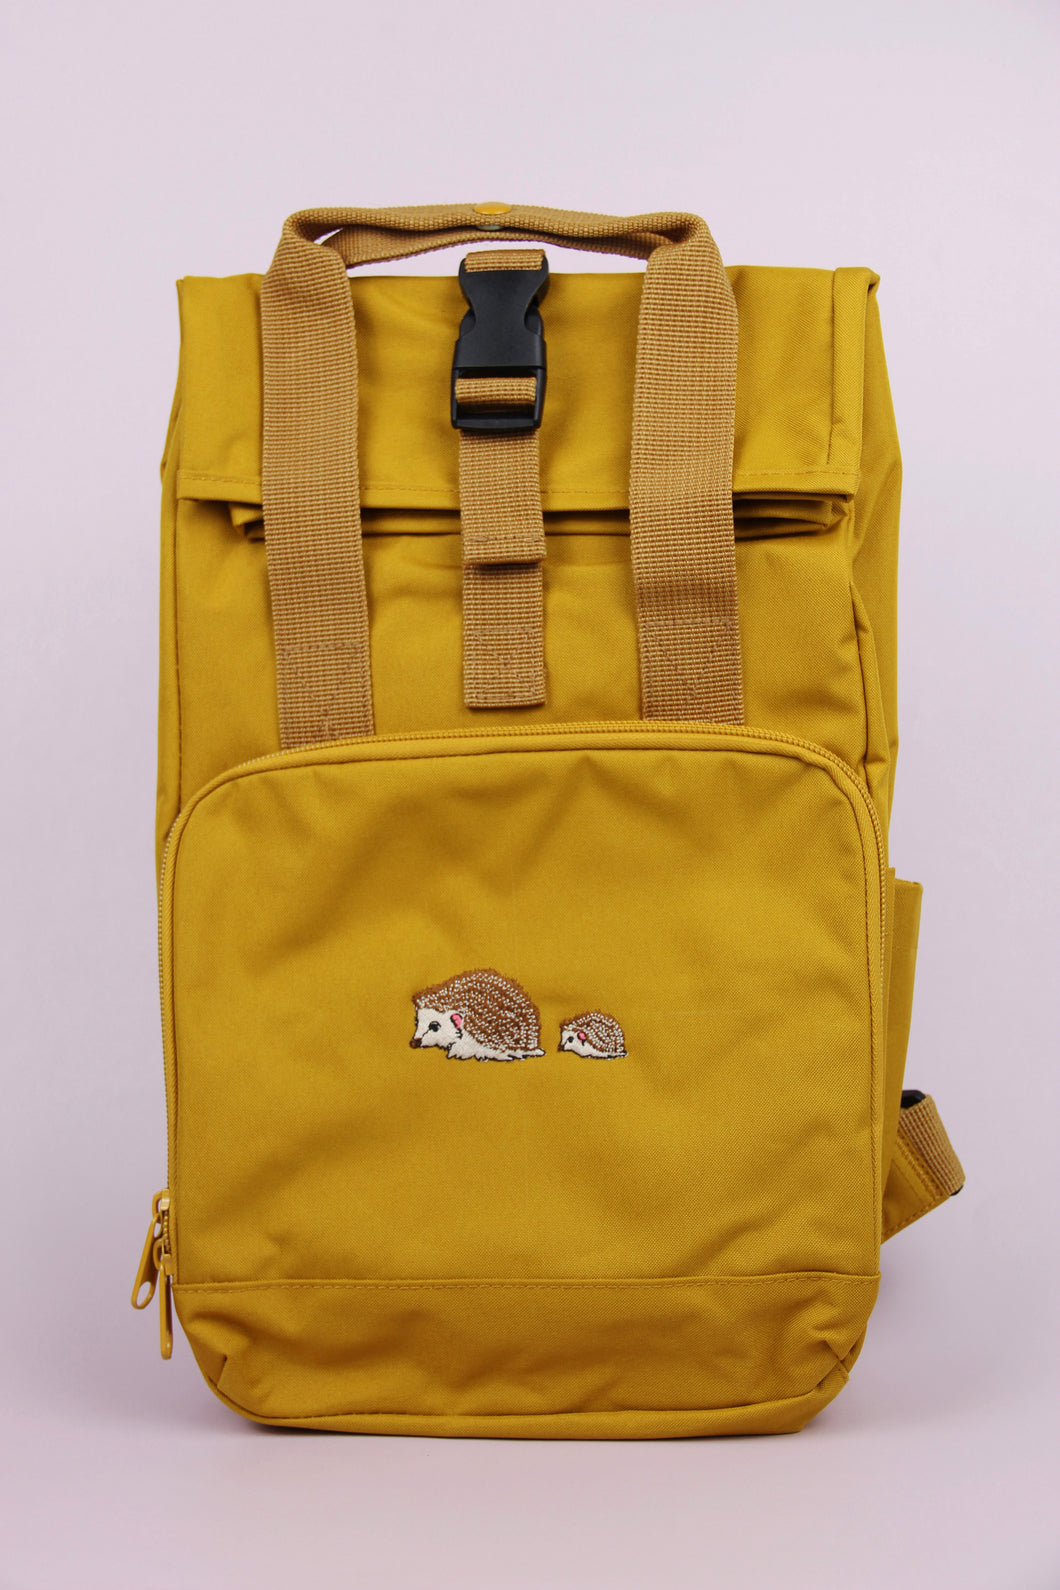 Hedgehog Recycled Backpack - Mustard